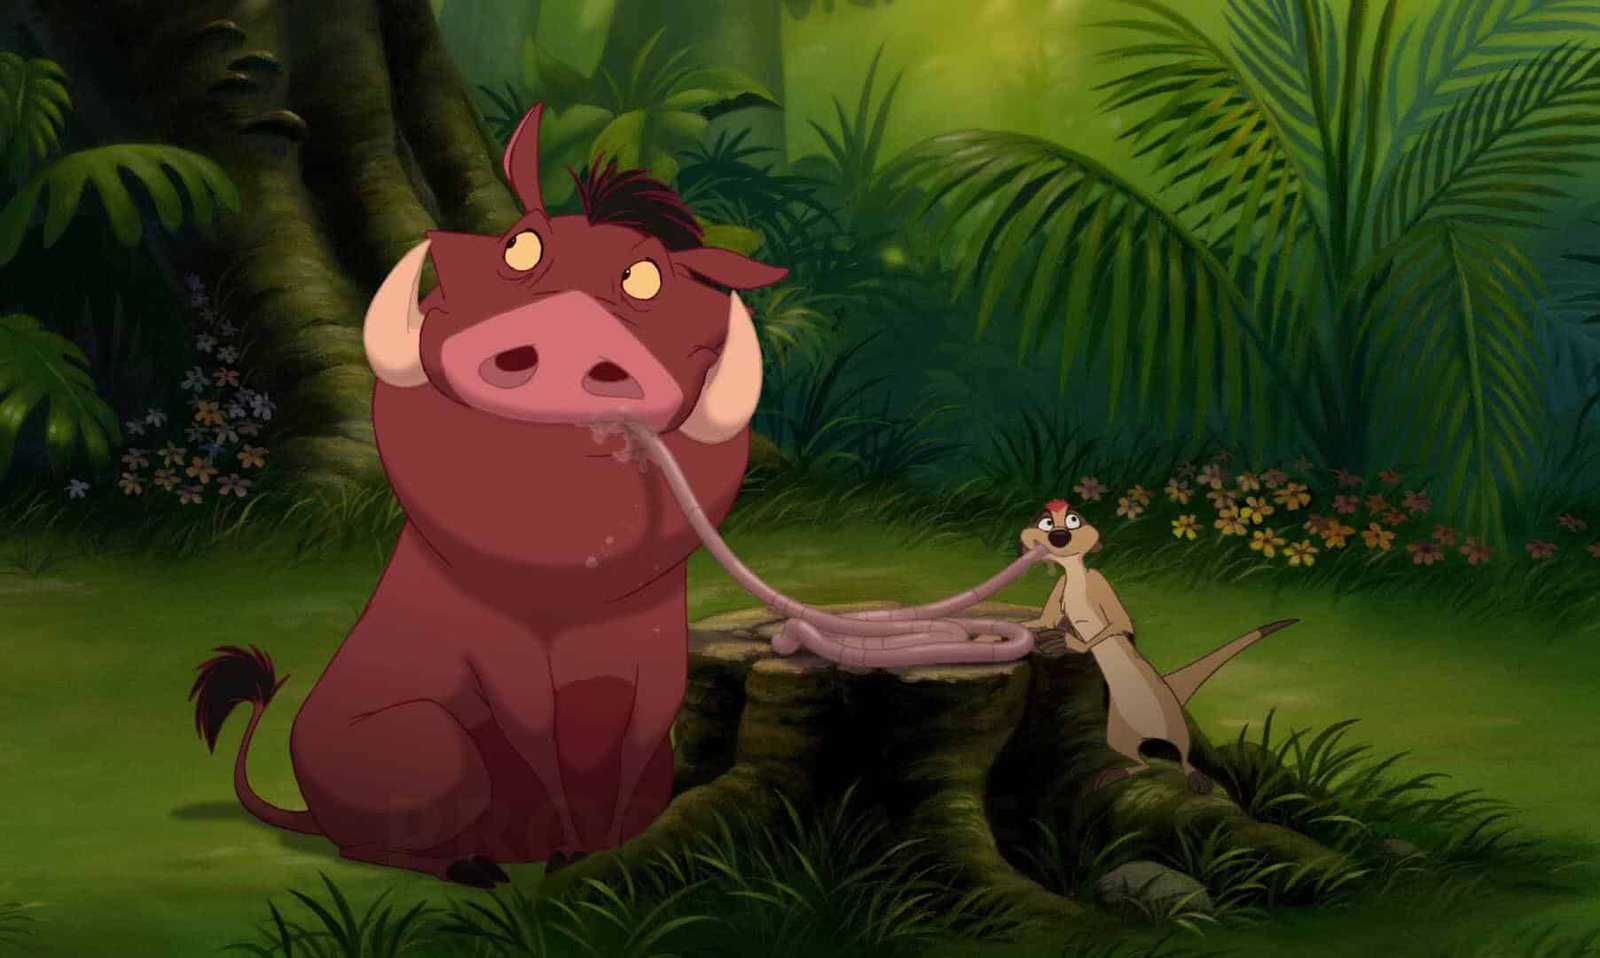 Image animée de "Le Roi Lion 3" représentant un grand phacochère brun et un mince suricate beige dans une jungle luxuriante. Le phacochère semble confus alors que